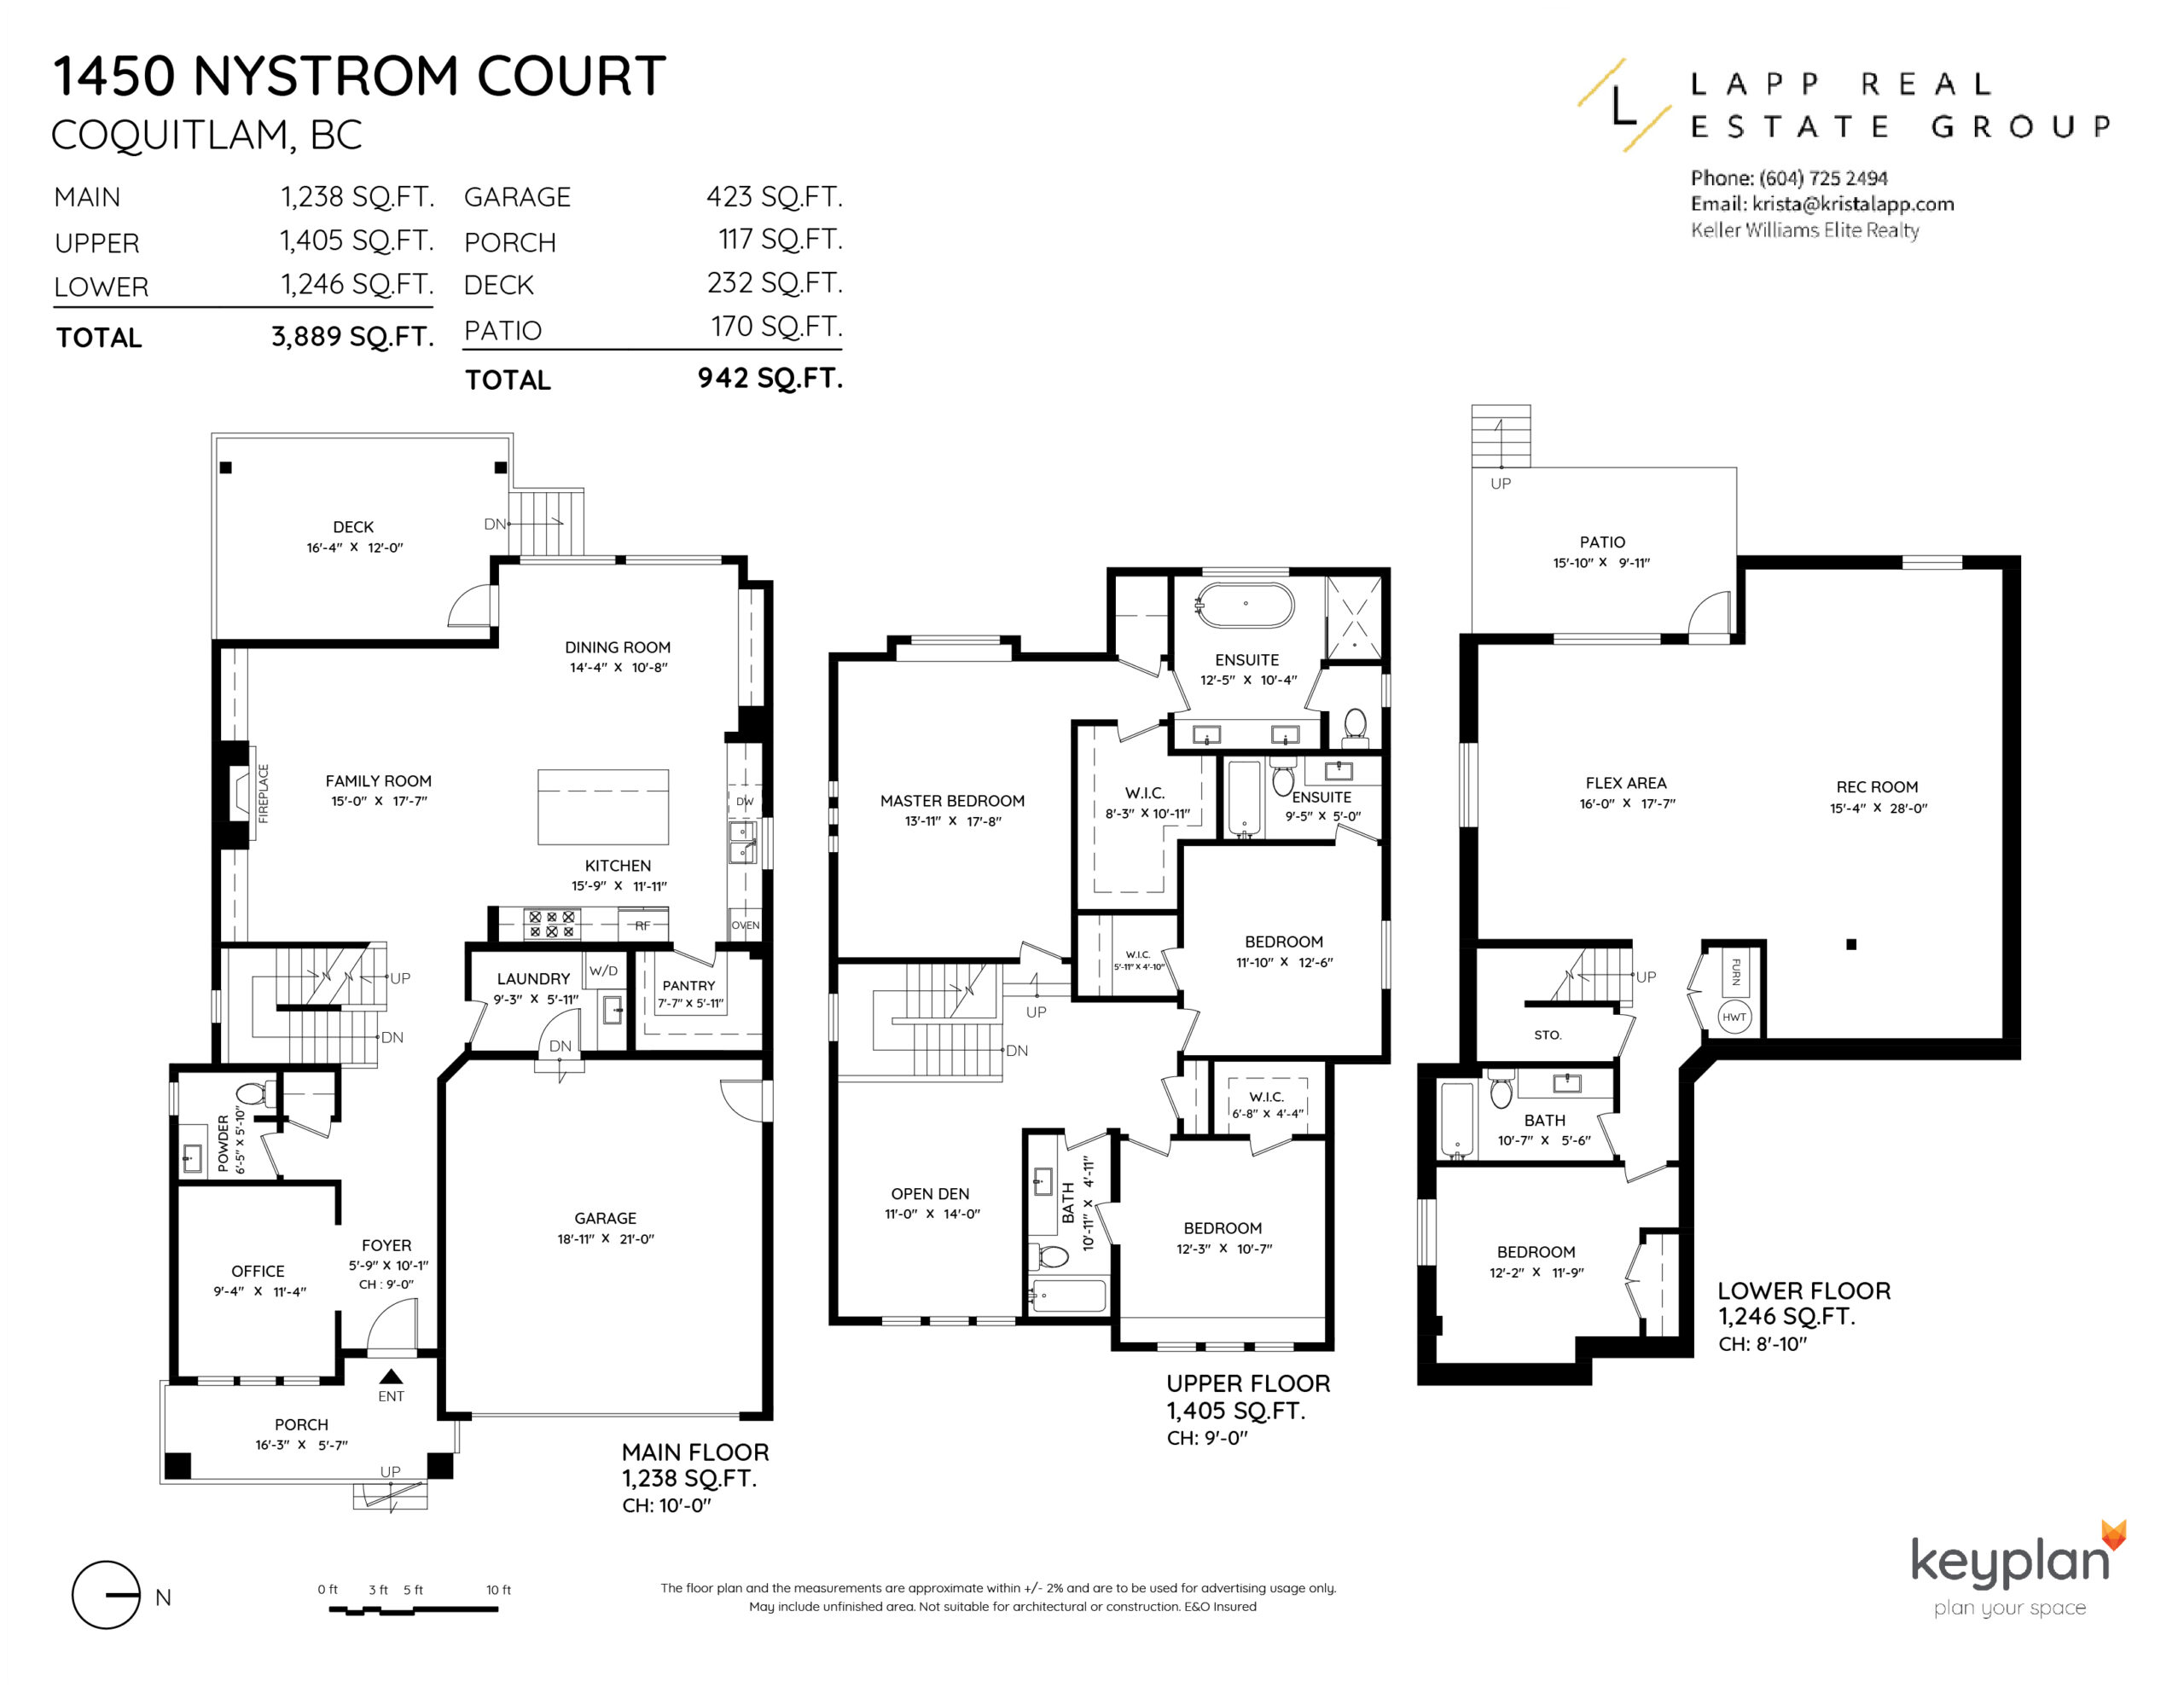 Coquitlam Realtor Krista Lapp 1450 Nystrom Ct Coquitlam-Layout Floorplan